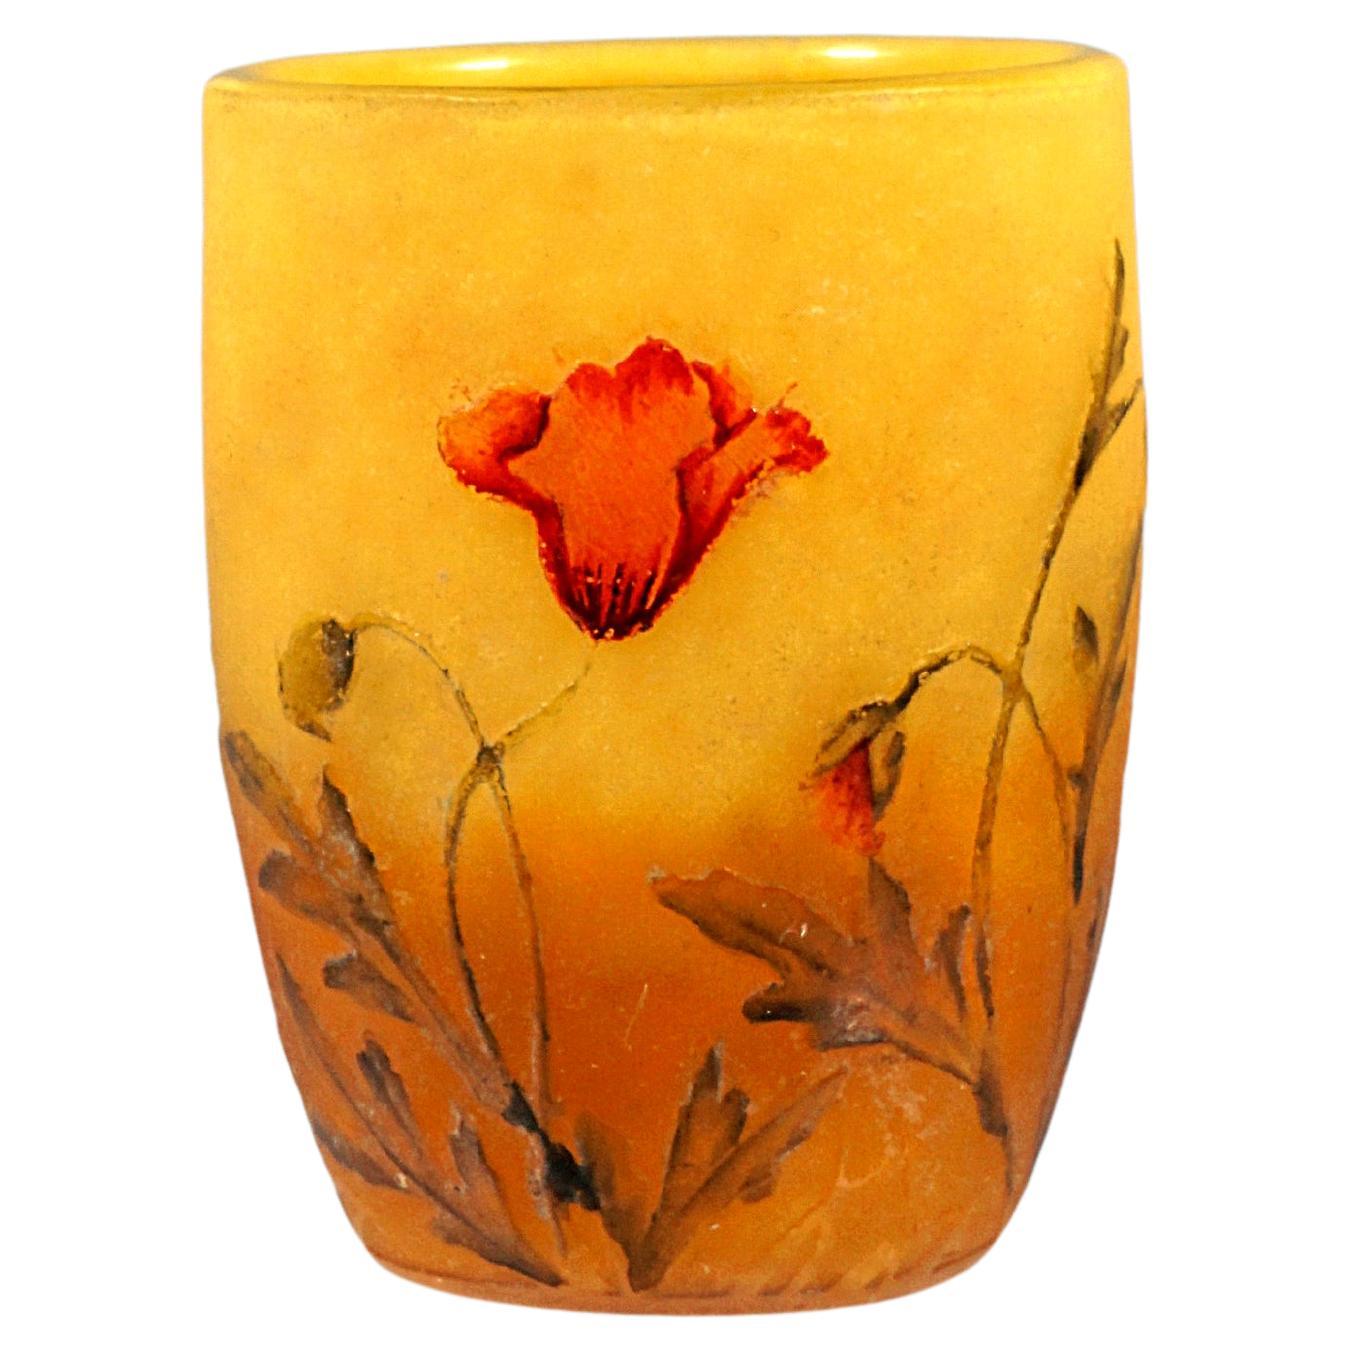 Petit vase camée Art Nouveau décoré de fleurs de coquelicot, Daum Nancy France, vers 1900